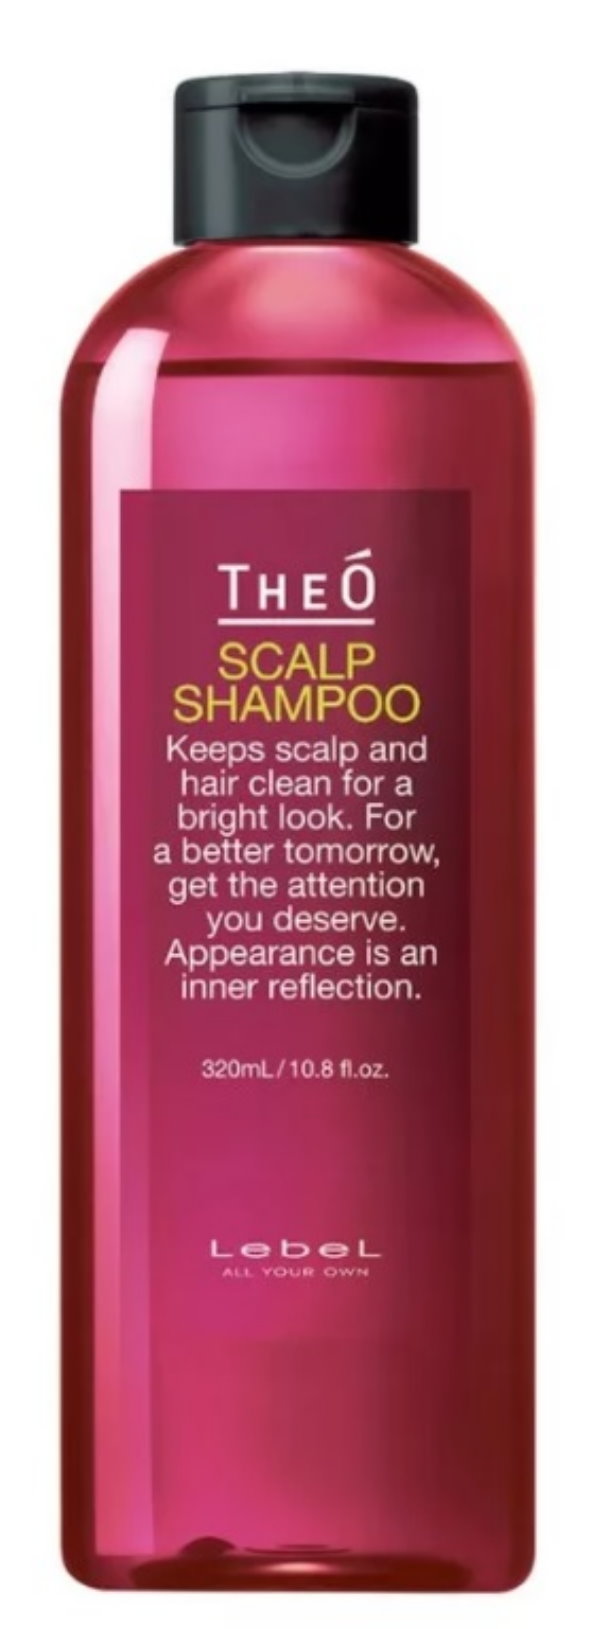 Шампунь многофункциональный Lebel TheO Scalp Shampoo, 320 мл эмульсия перед использованием шампуня scalp detox